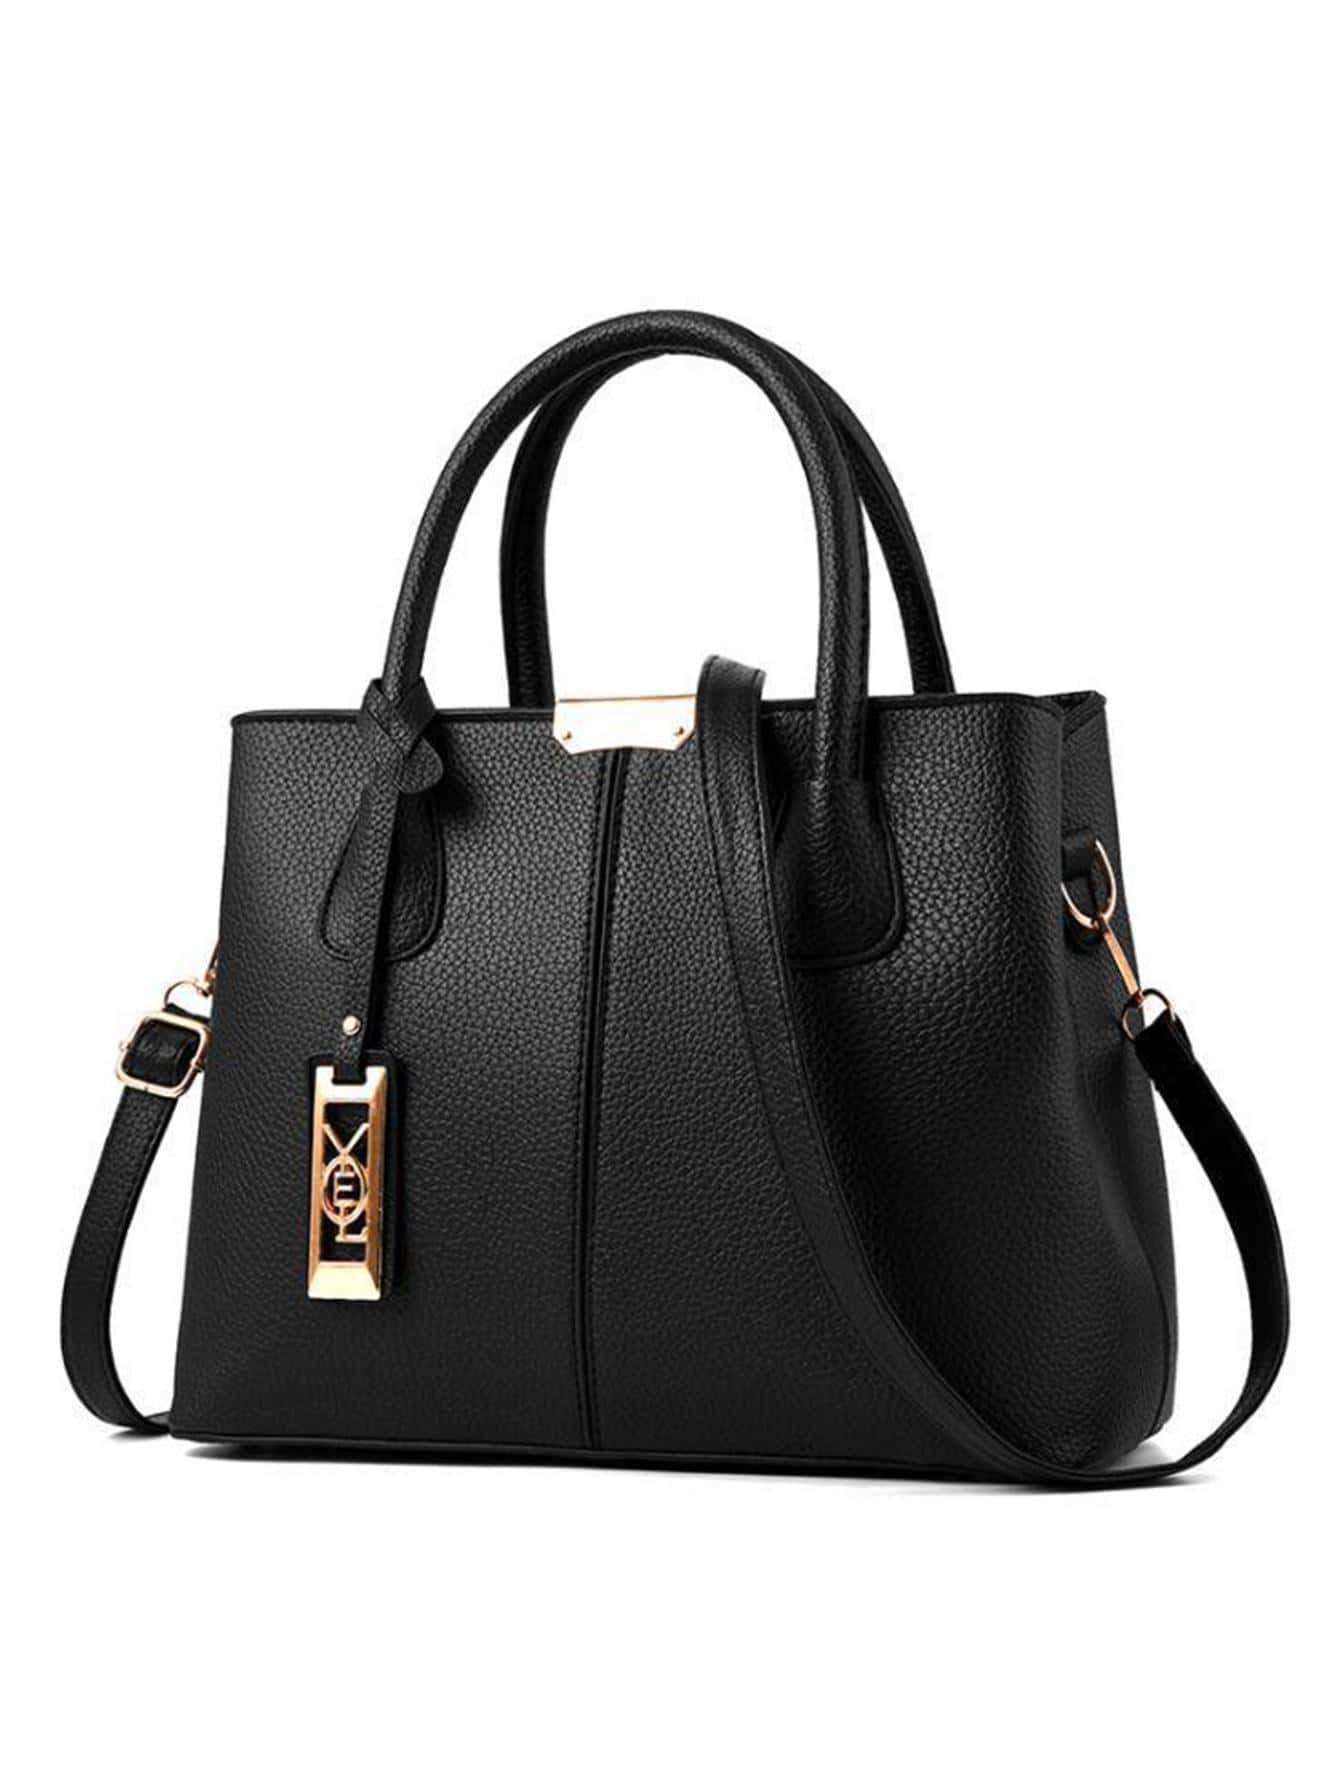 Элегантная сумка-мешок Черная Водонепроницаемая Легкая Вместительная Полиуретан, черный женская сумка мешок из искусственной кожи